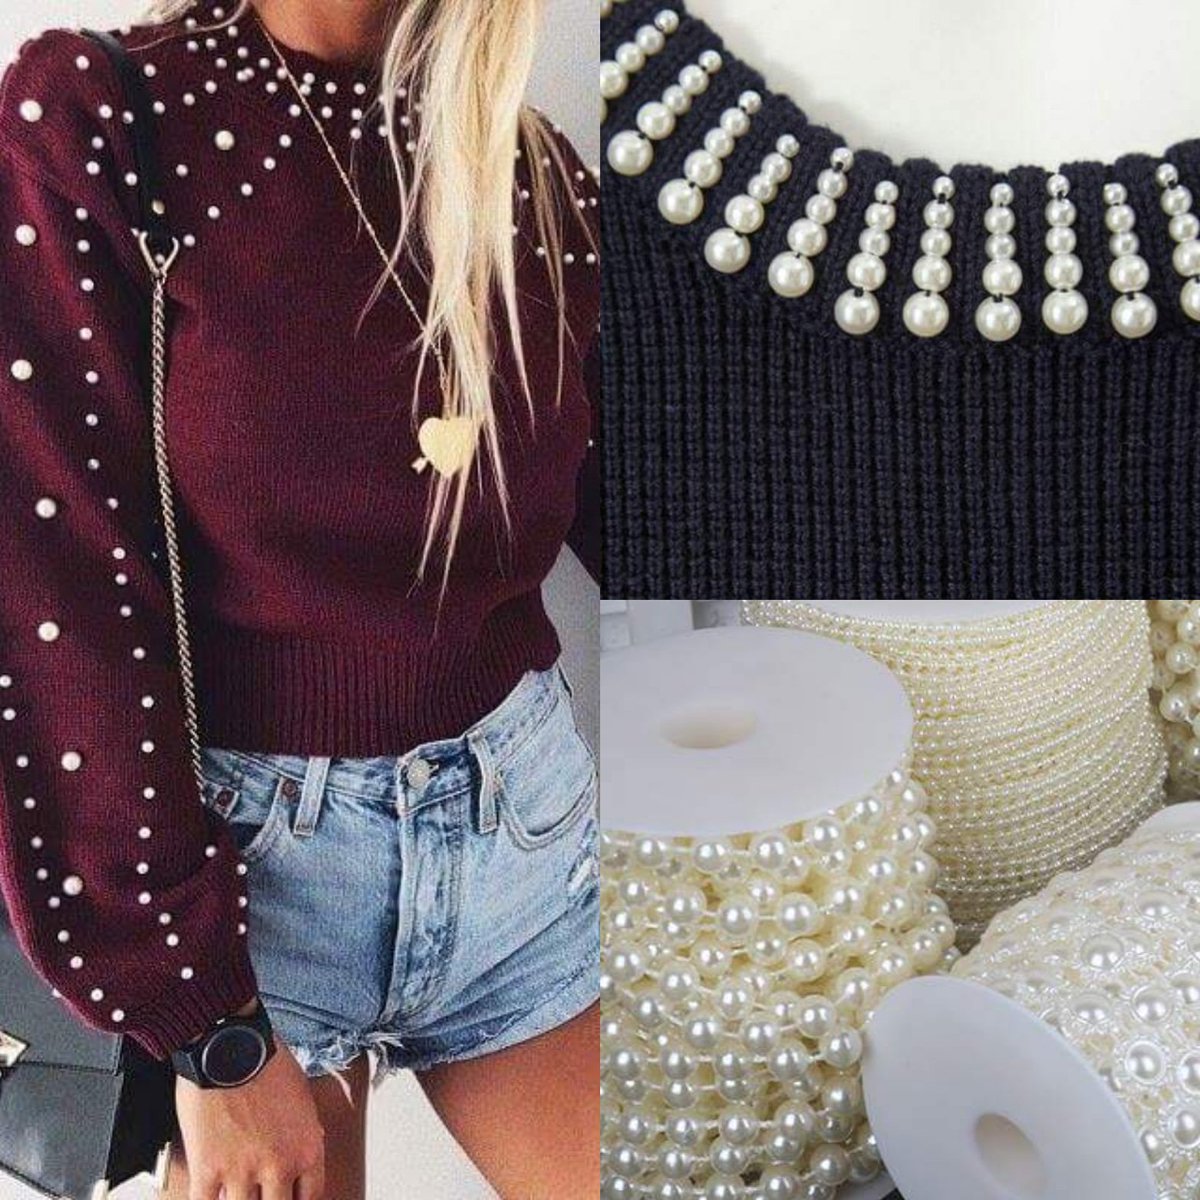 La Retoquería on Twitter: "Tenemos tiras de perlas de diferentes tamaños  para decorar tus suéteres! 😍 https://t.co/6couKkHfZ7" / Twitter